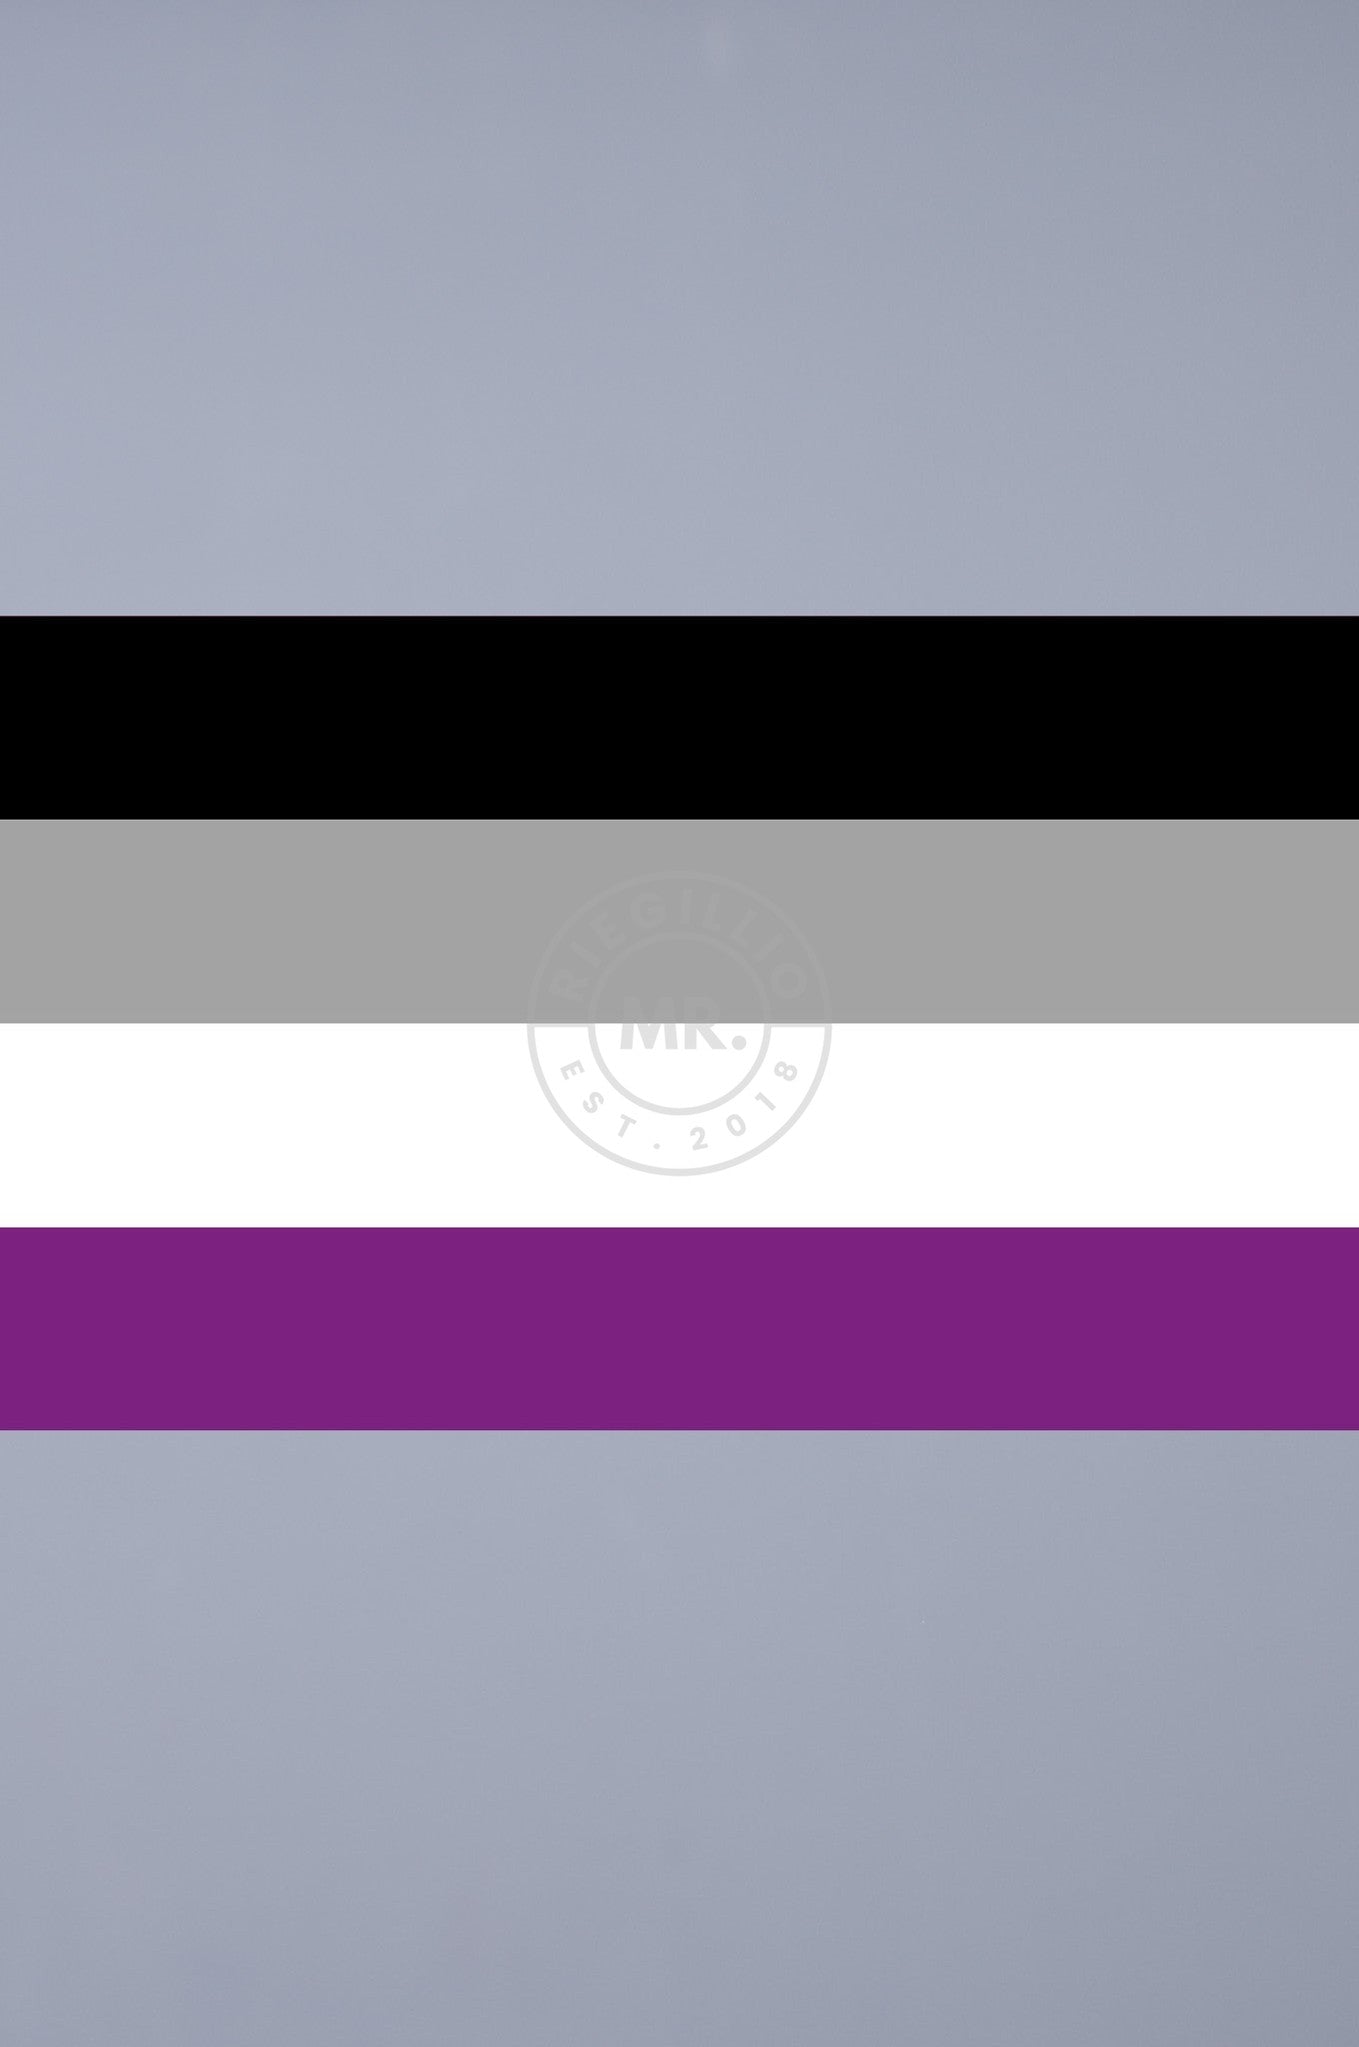 Pride Flag - Asexual - 90 x 150 cm at MR. Riegillio